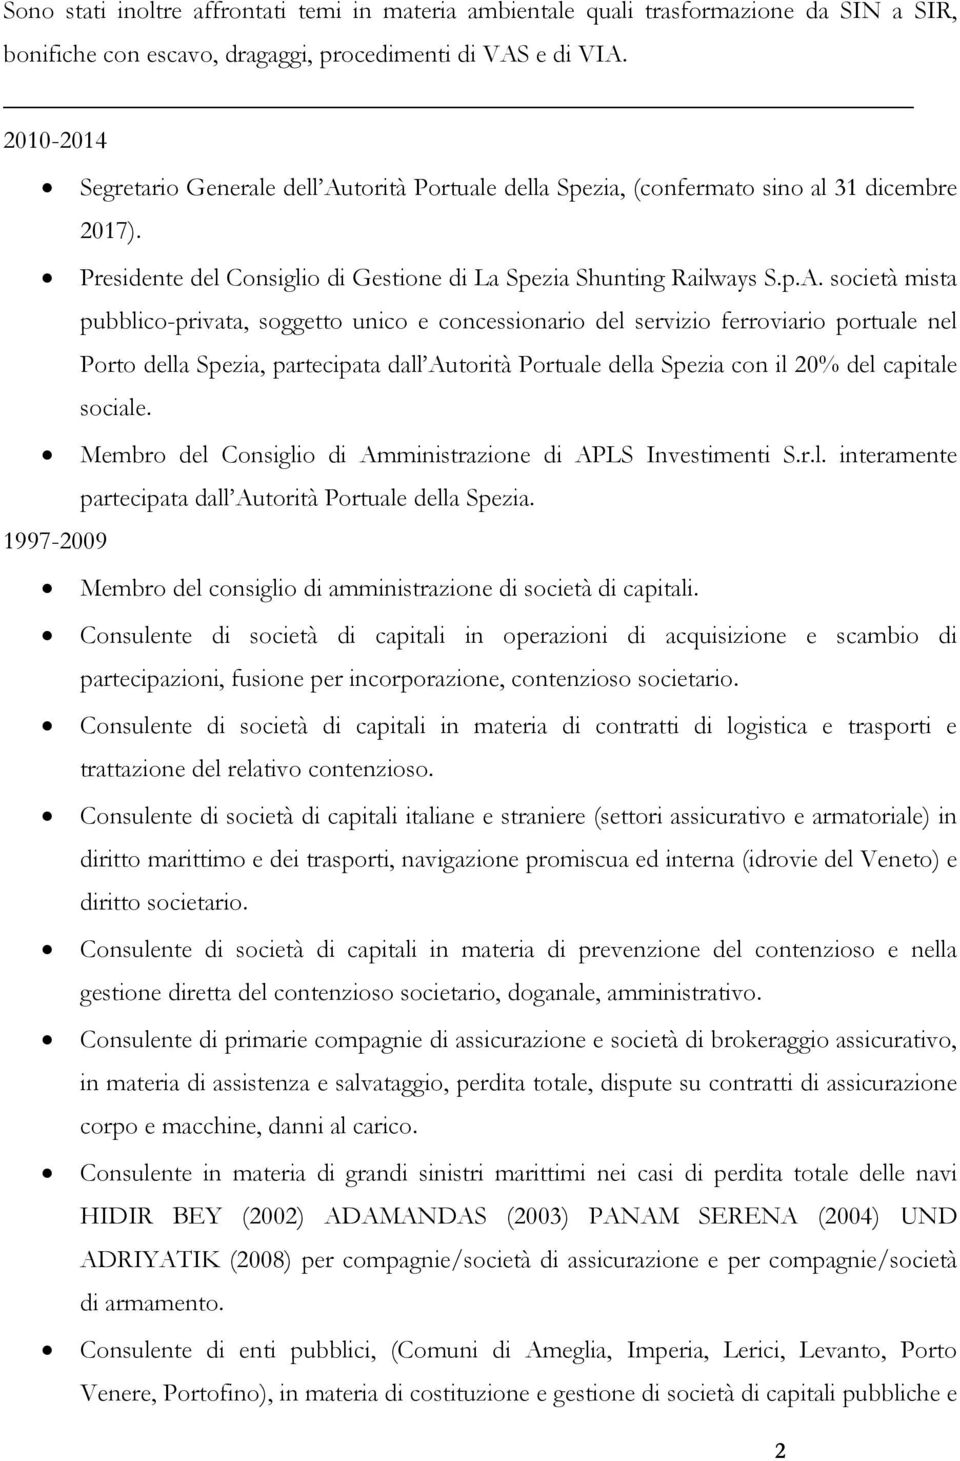 torità Portuale della Spezia, (confermato sino al 31 dicembre 2017). Presidente del Consiglio di Gestione di La Spezia Shunting Railways S.p.A.